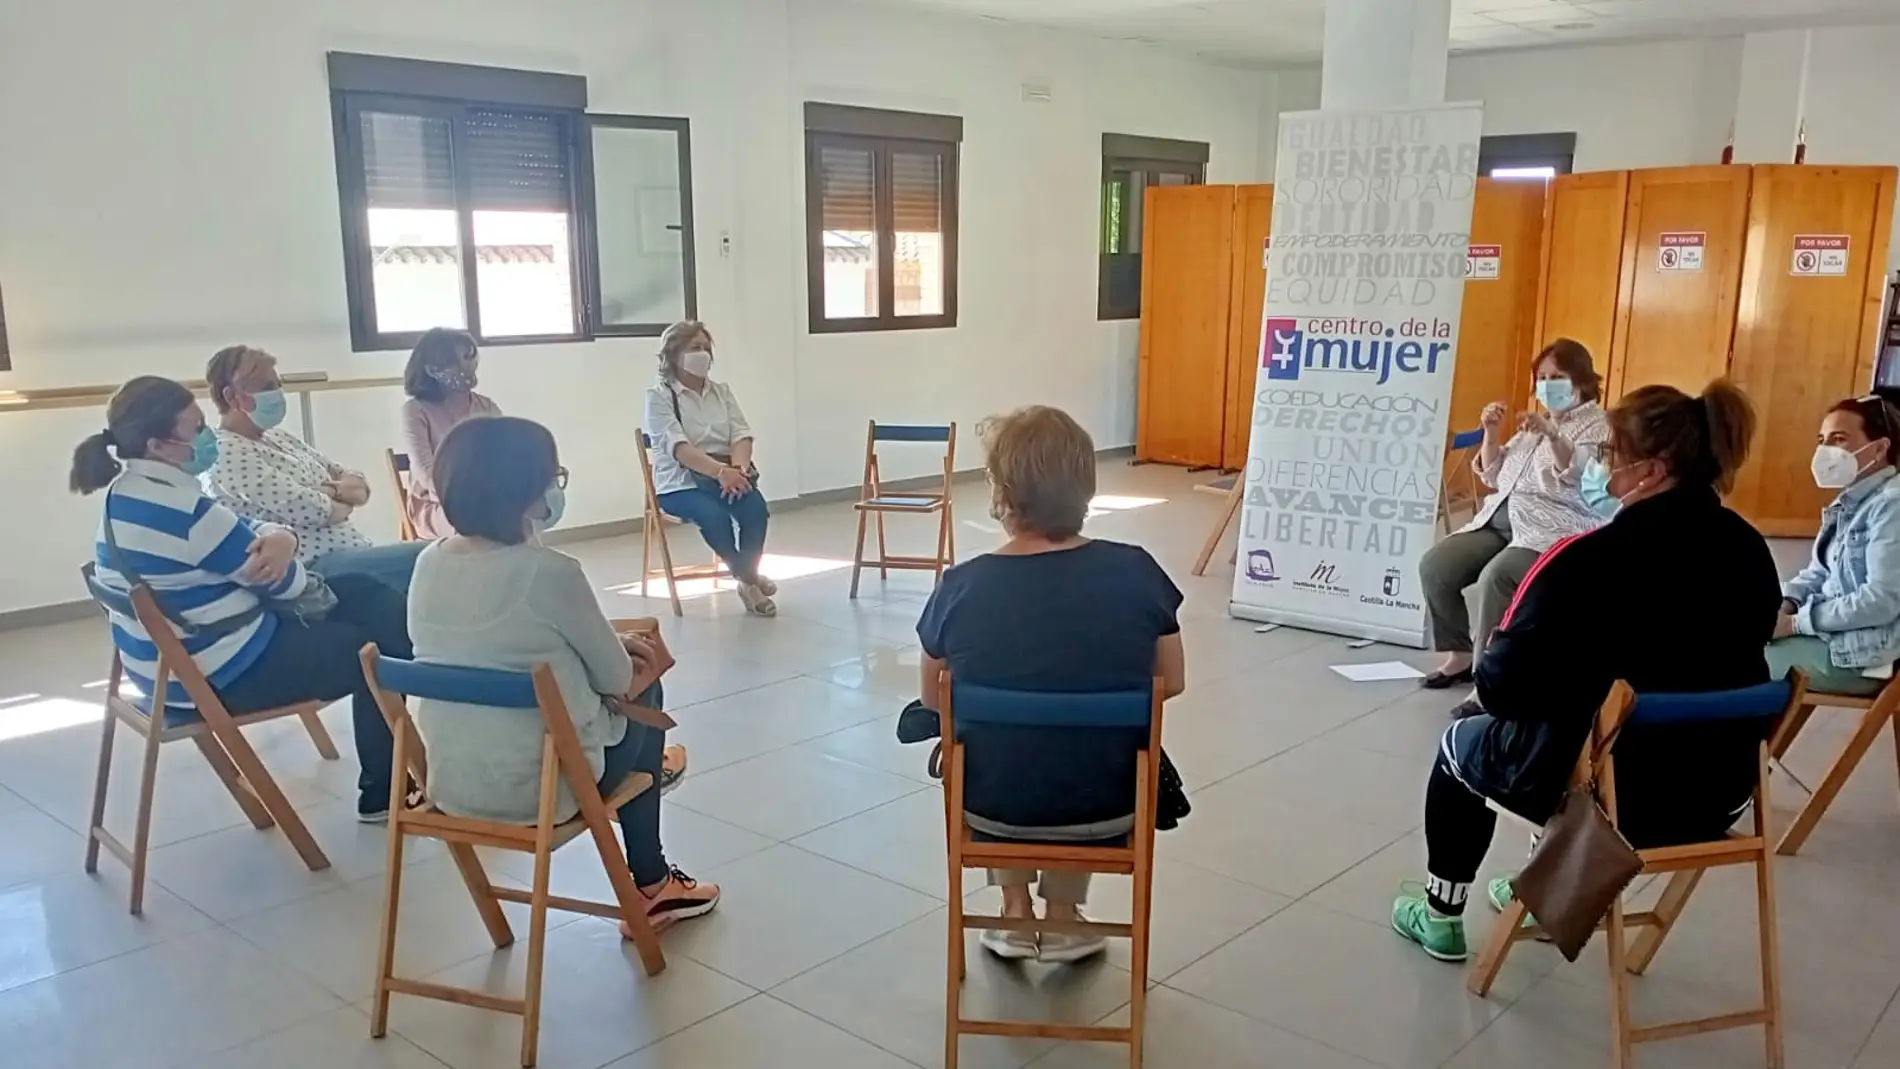 Buena acogida al taller de mindfulness ofrecido por el Centro de la Mujer de Miguel Esteban